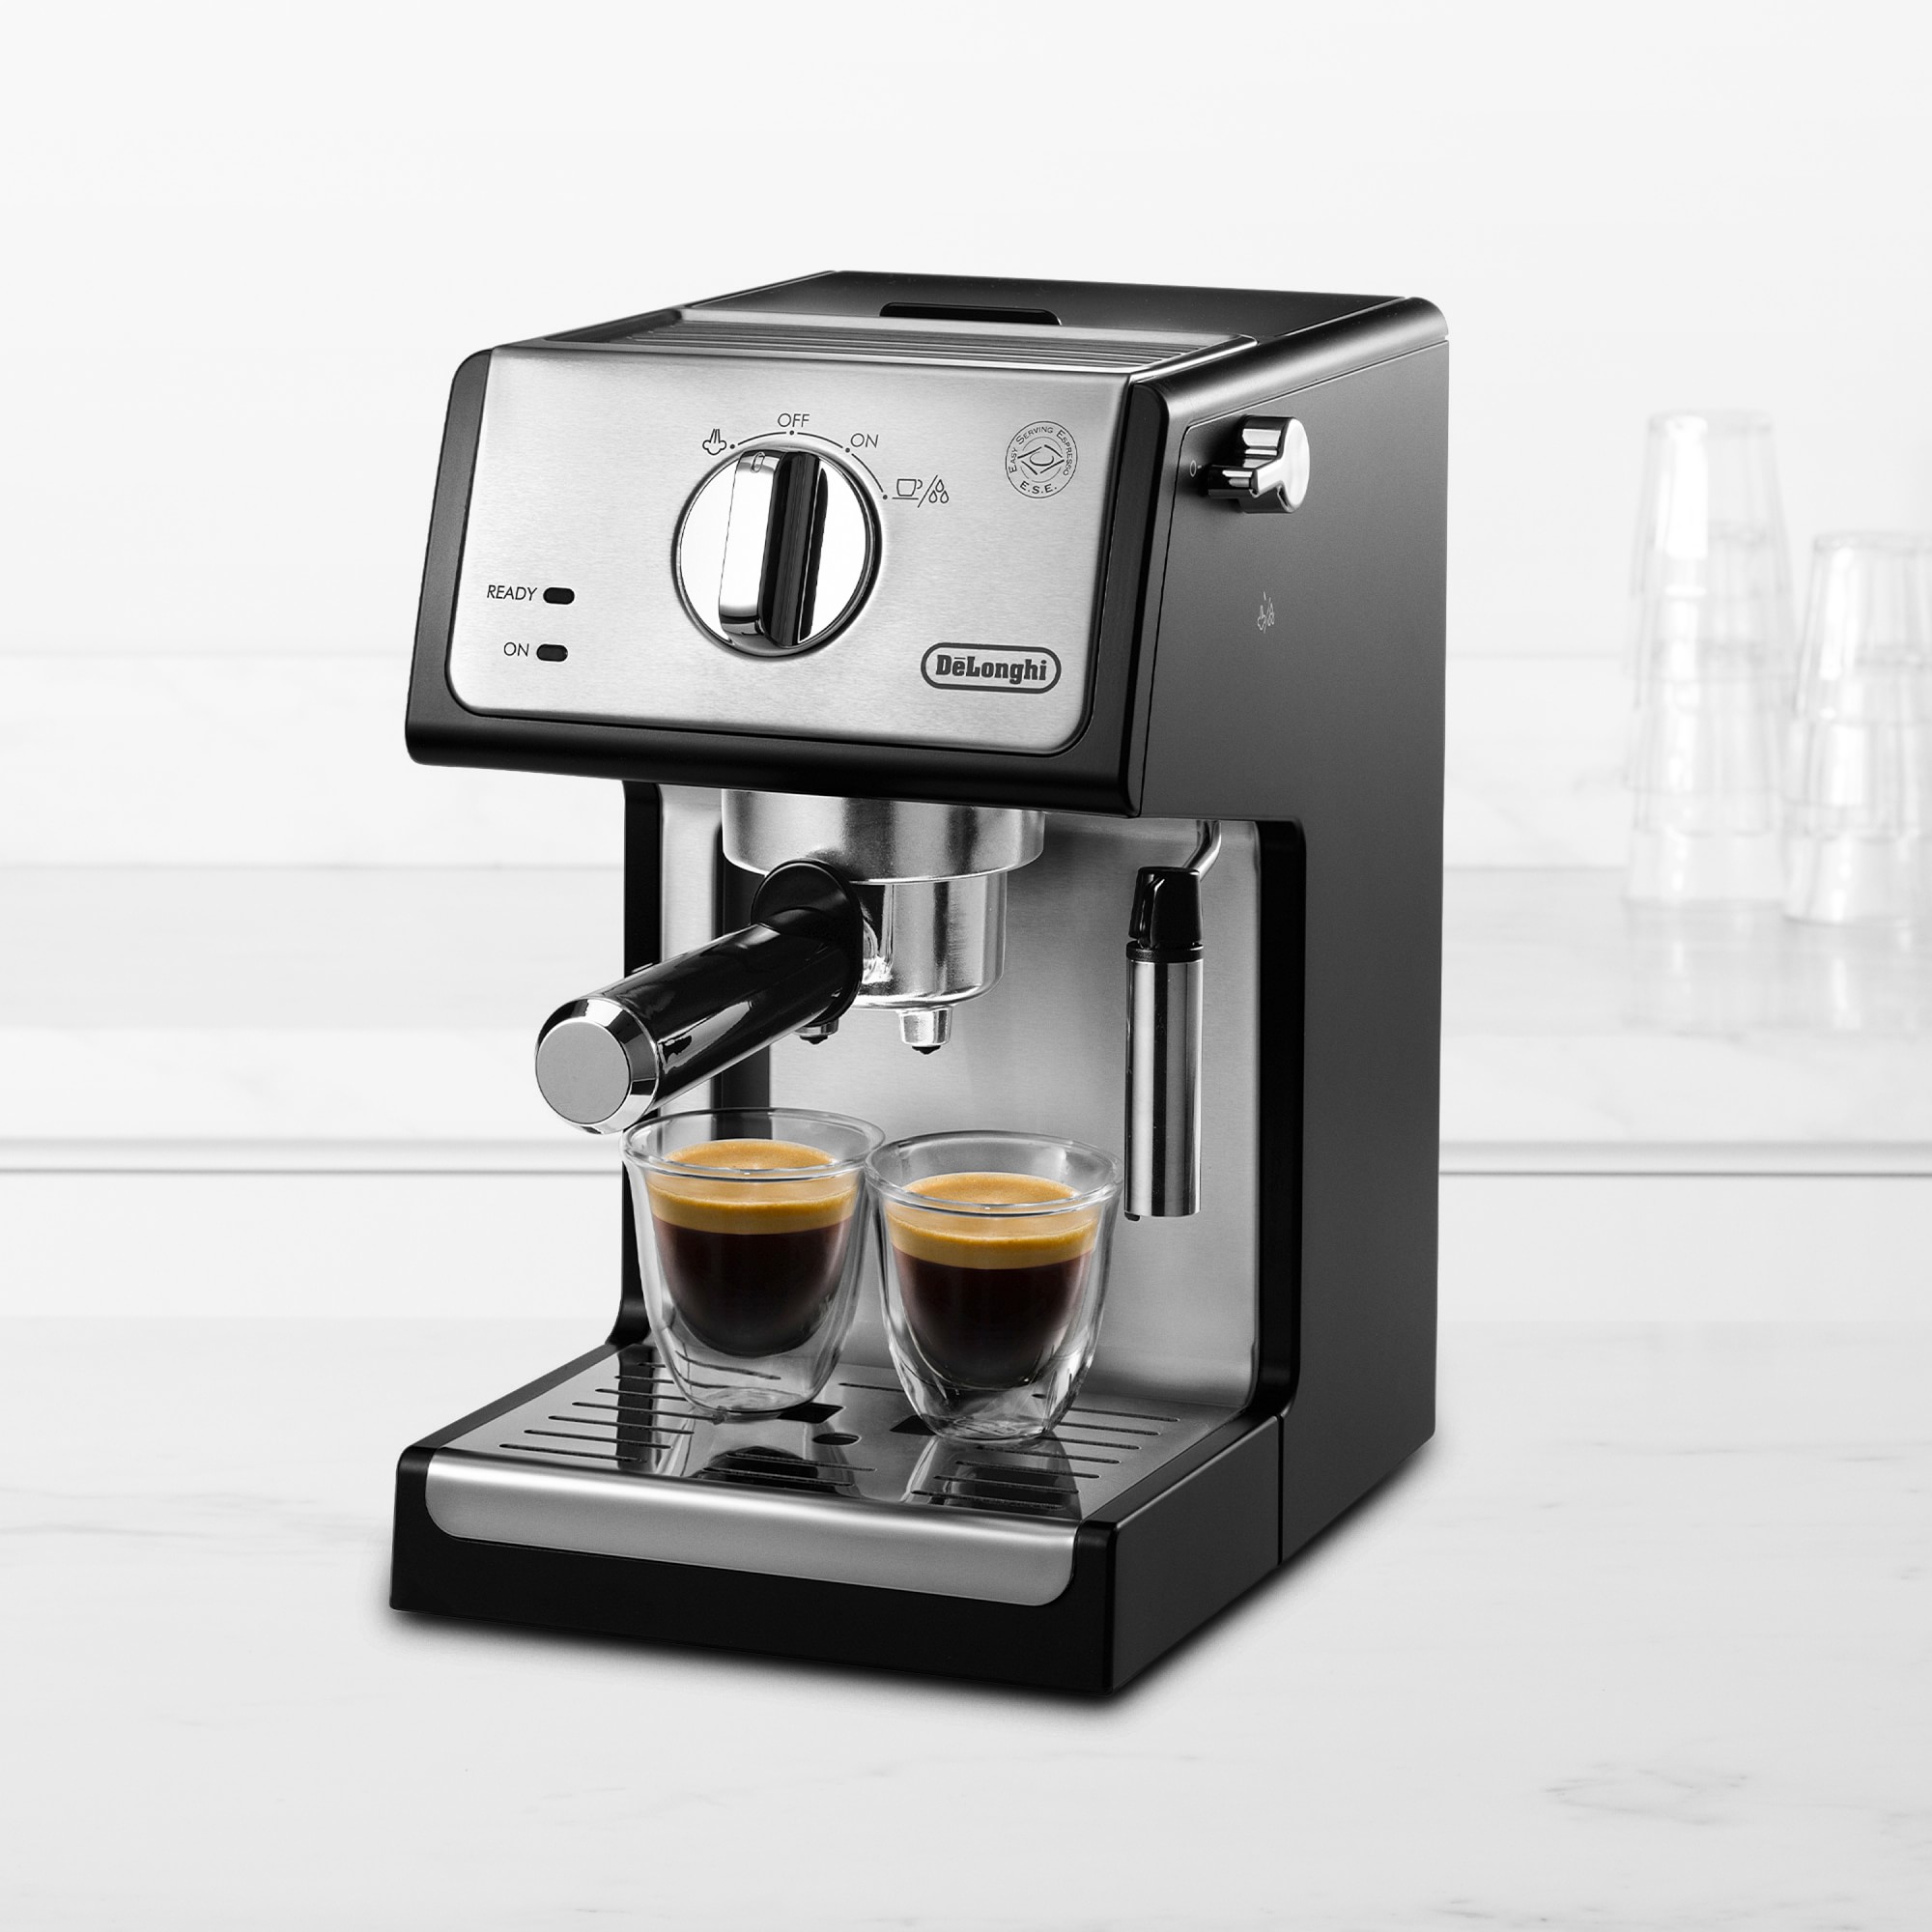 De'Longhi ECP3420 15-Bar Espresso & Cappuccino Machine with Advanced Cappuccino System